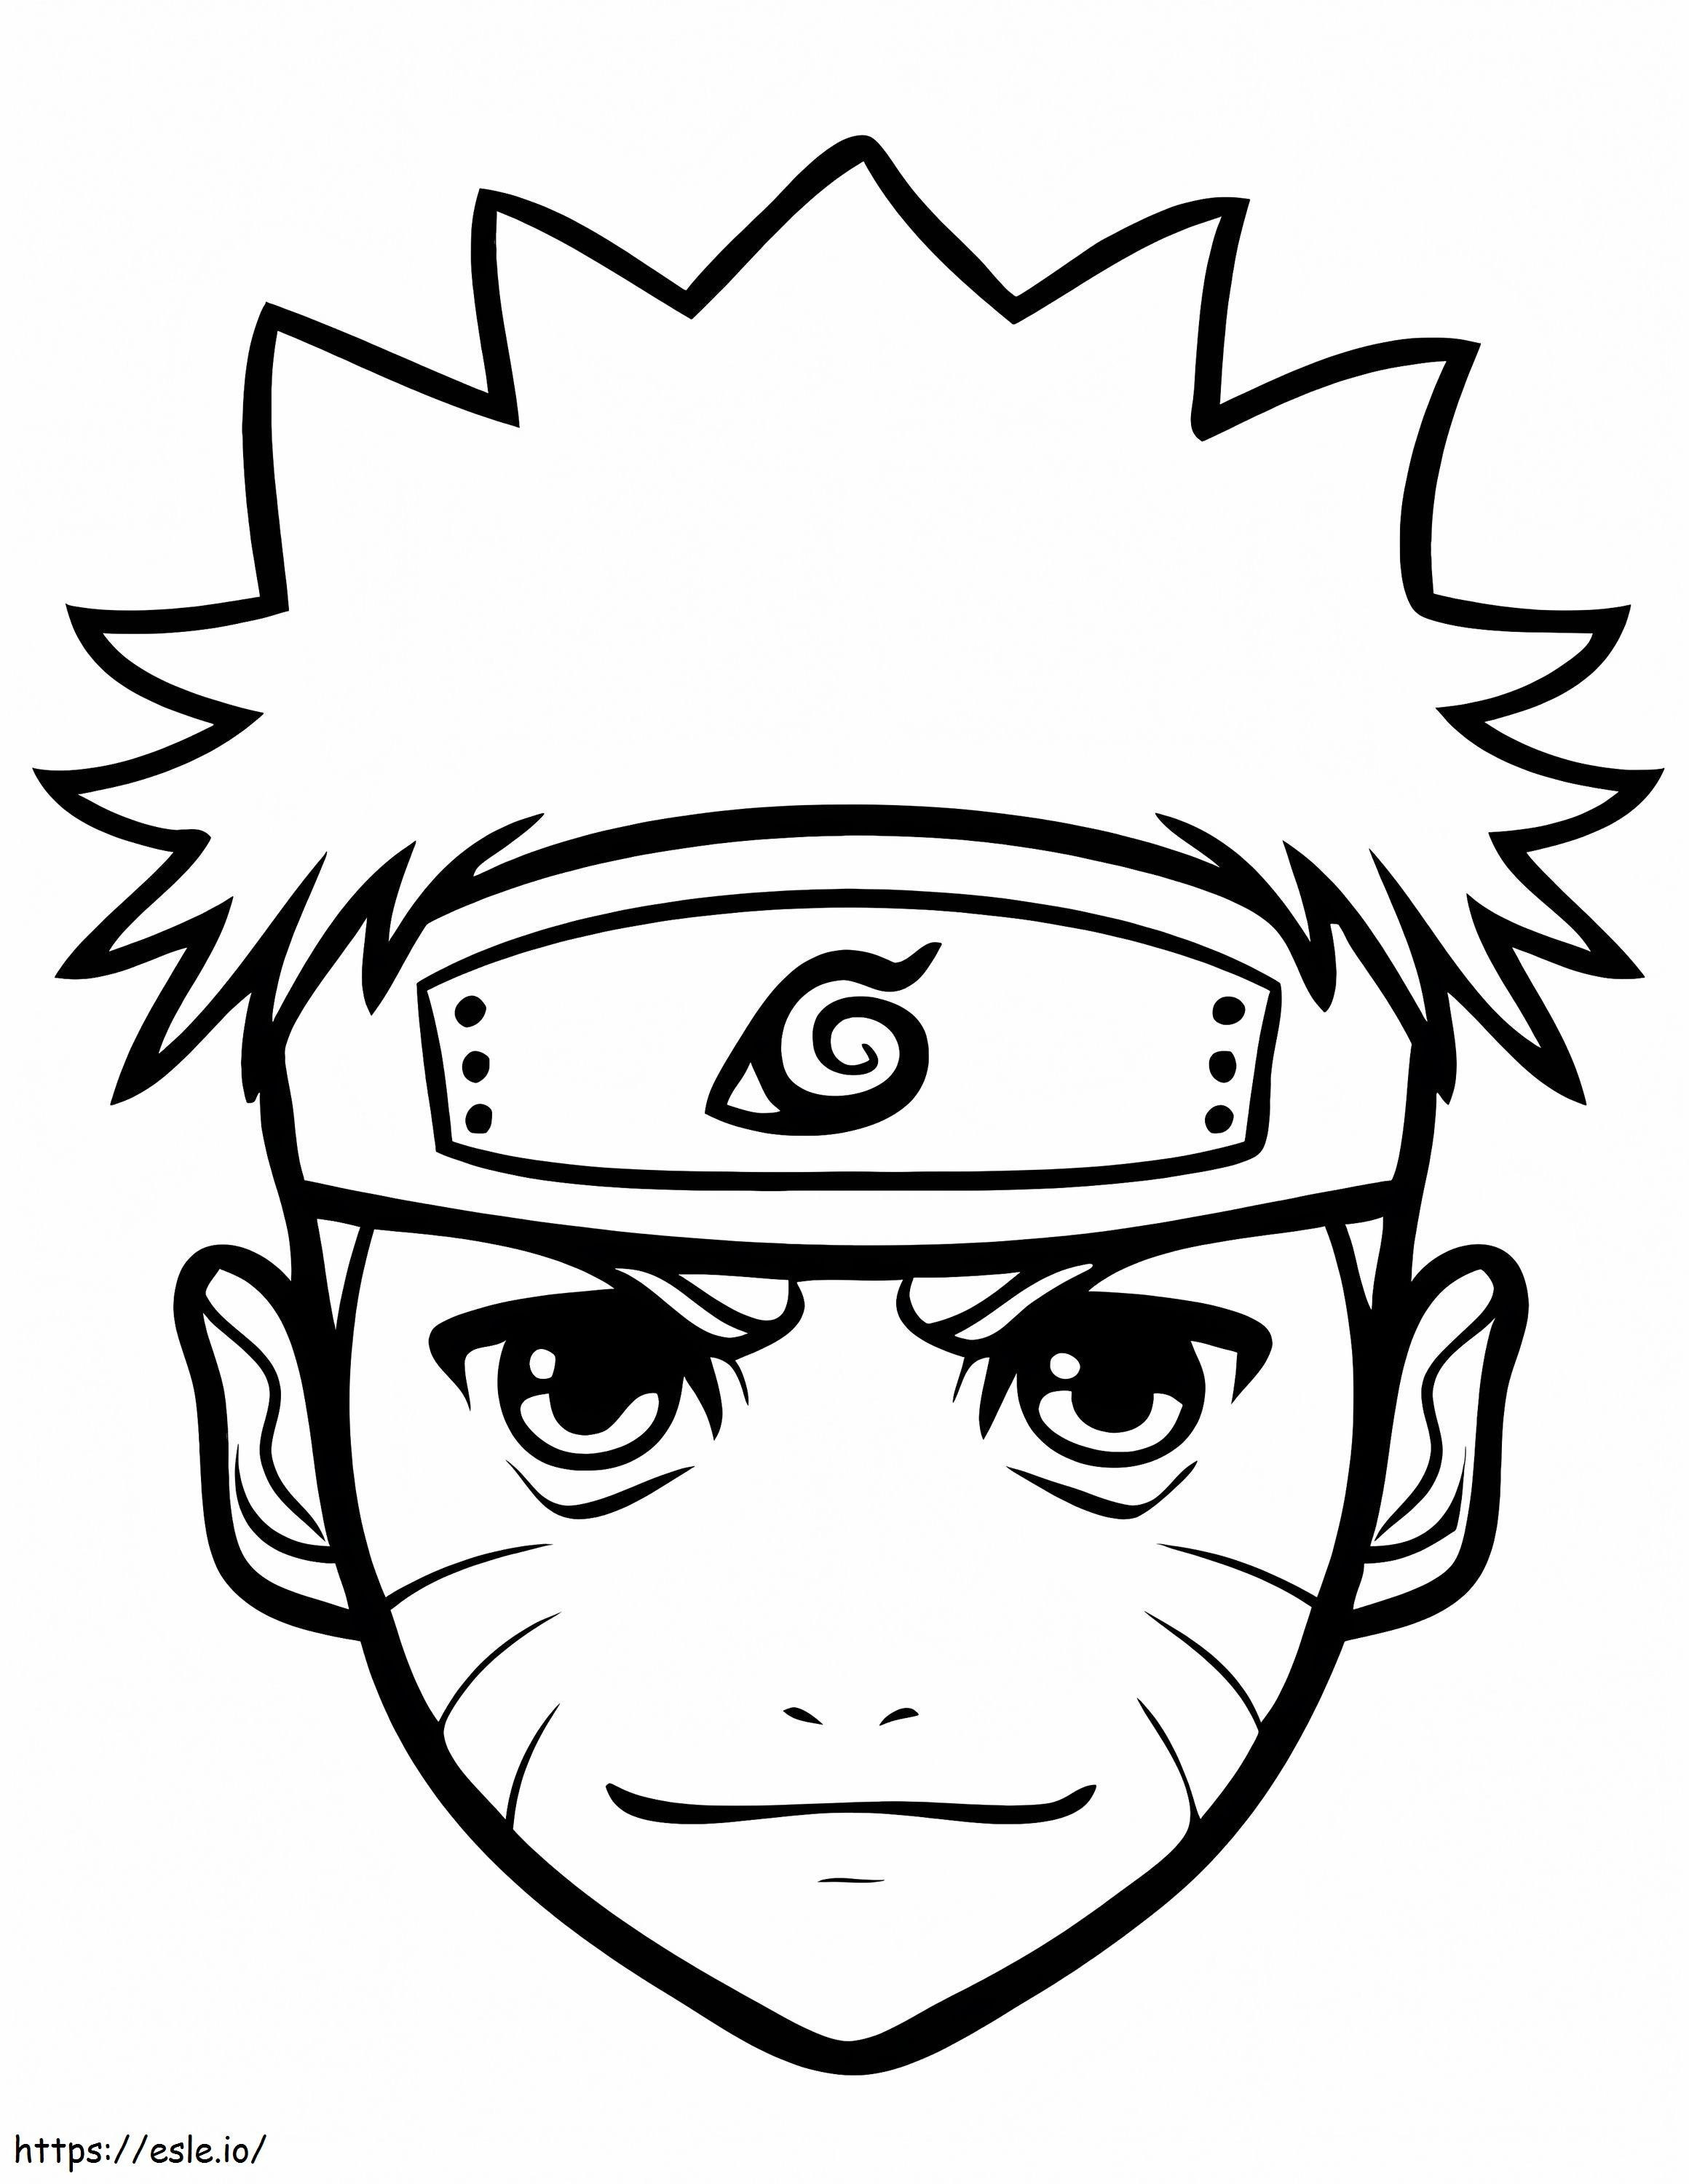 Visage De Naruto 792X1024 coloring page